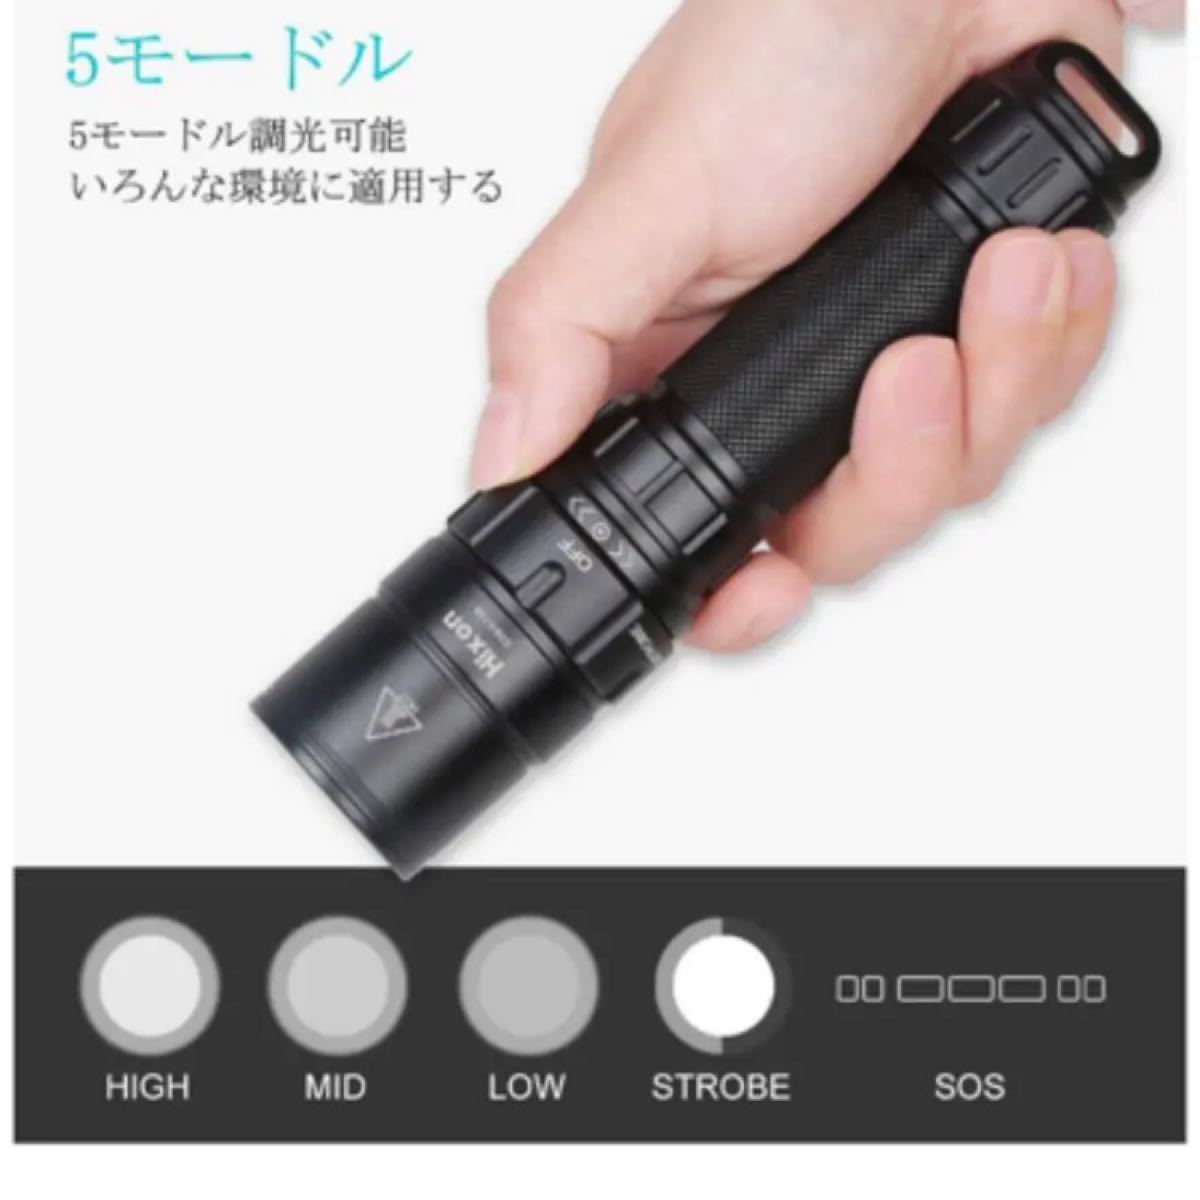 懐中電灯 kratax USB充電式 超高輝度 小型 軽量 強力 ハンディライト IPX7 防水 7モード調光可能